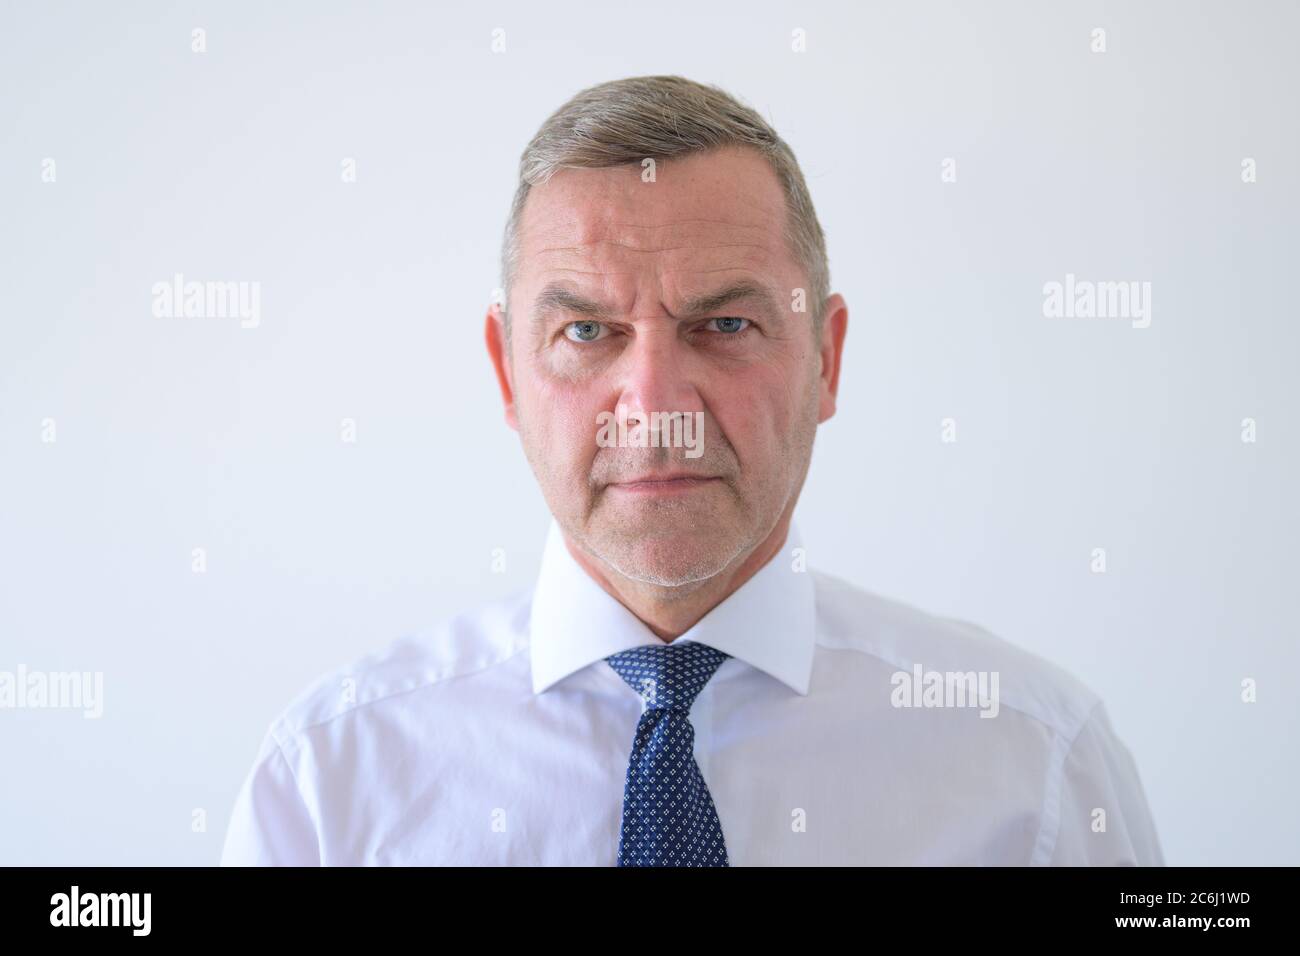 Scharfsinniger Mann, der der Kamera einen einfühlenden Blick mit einem leichten Stirnrunzeln der Konzentration in einem Kopf- und Schulterporträt auf Weiß verleiht Stockfoto